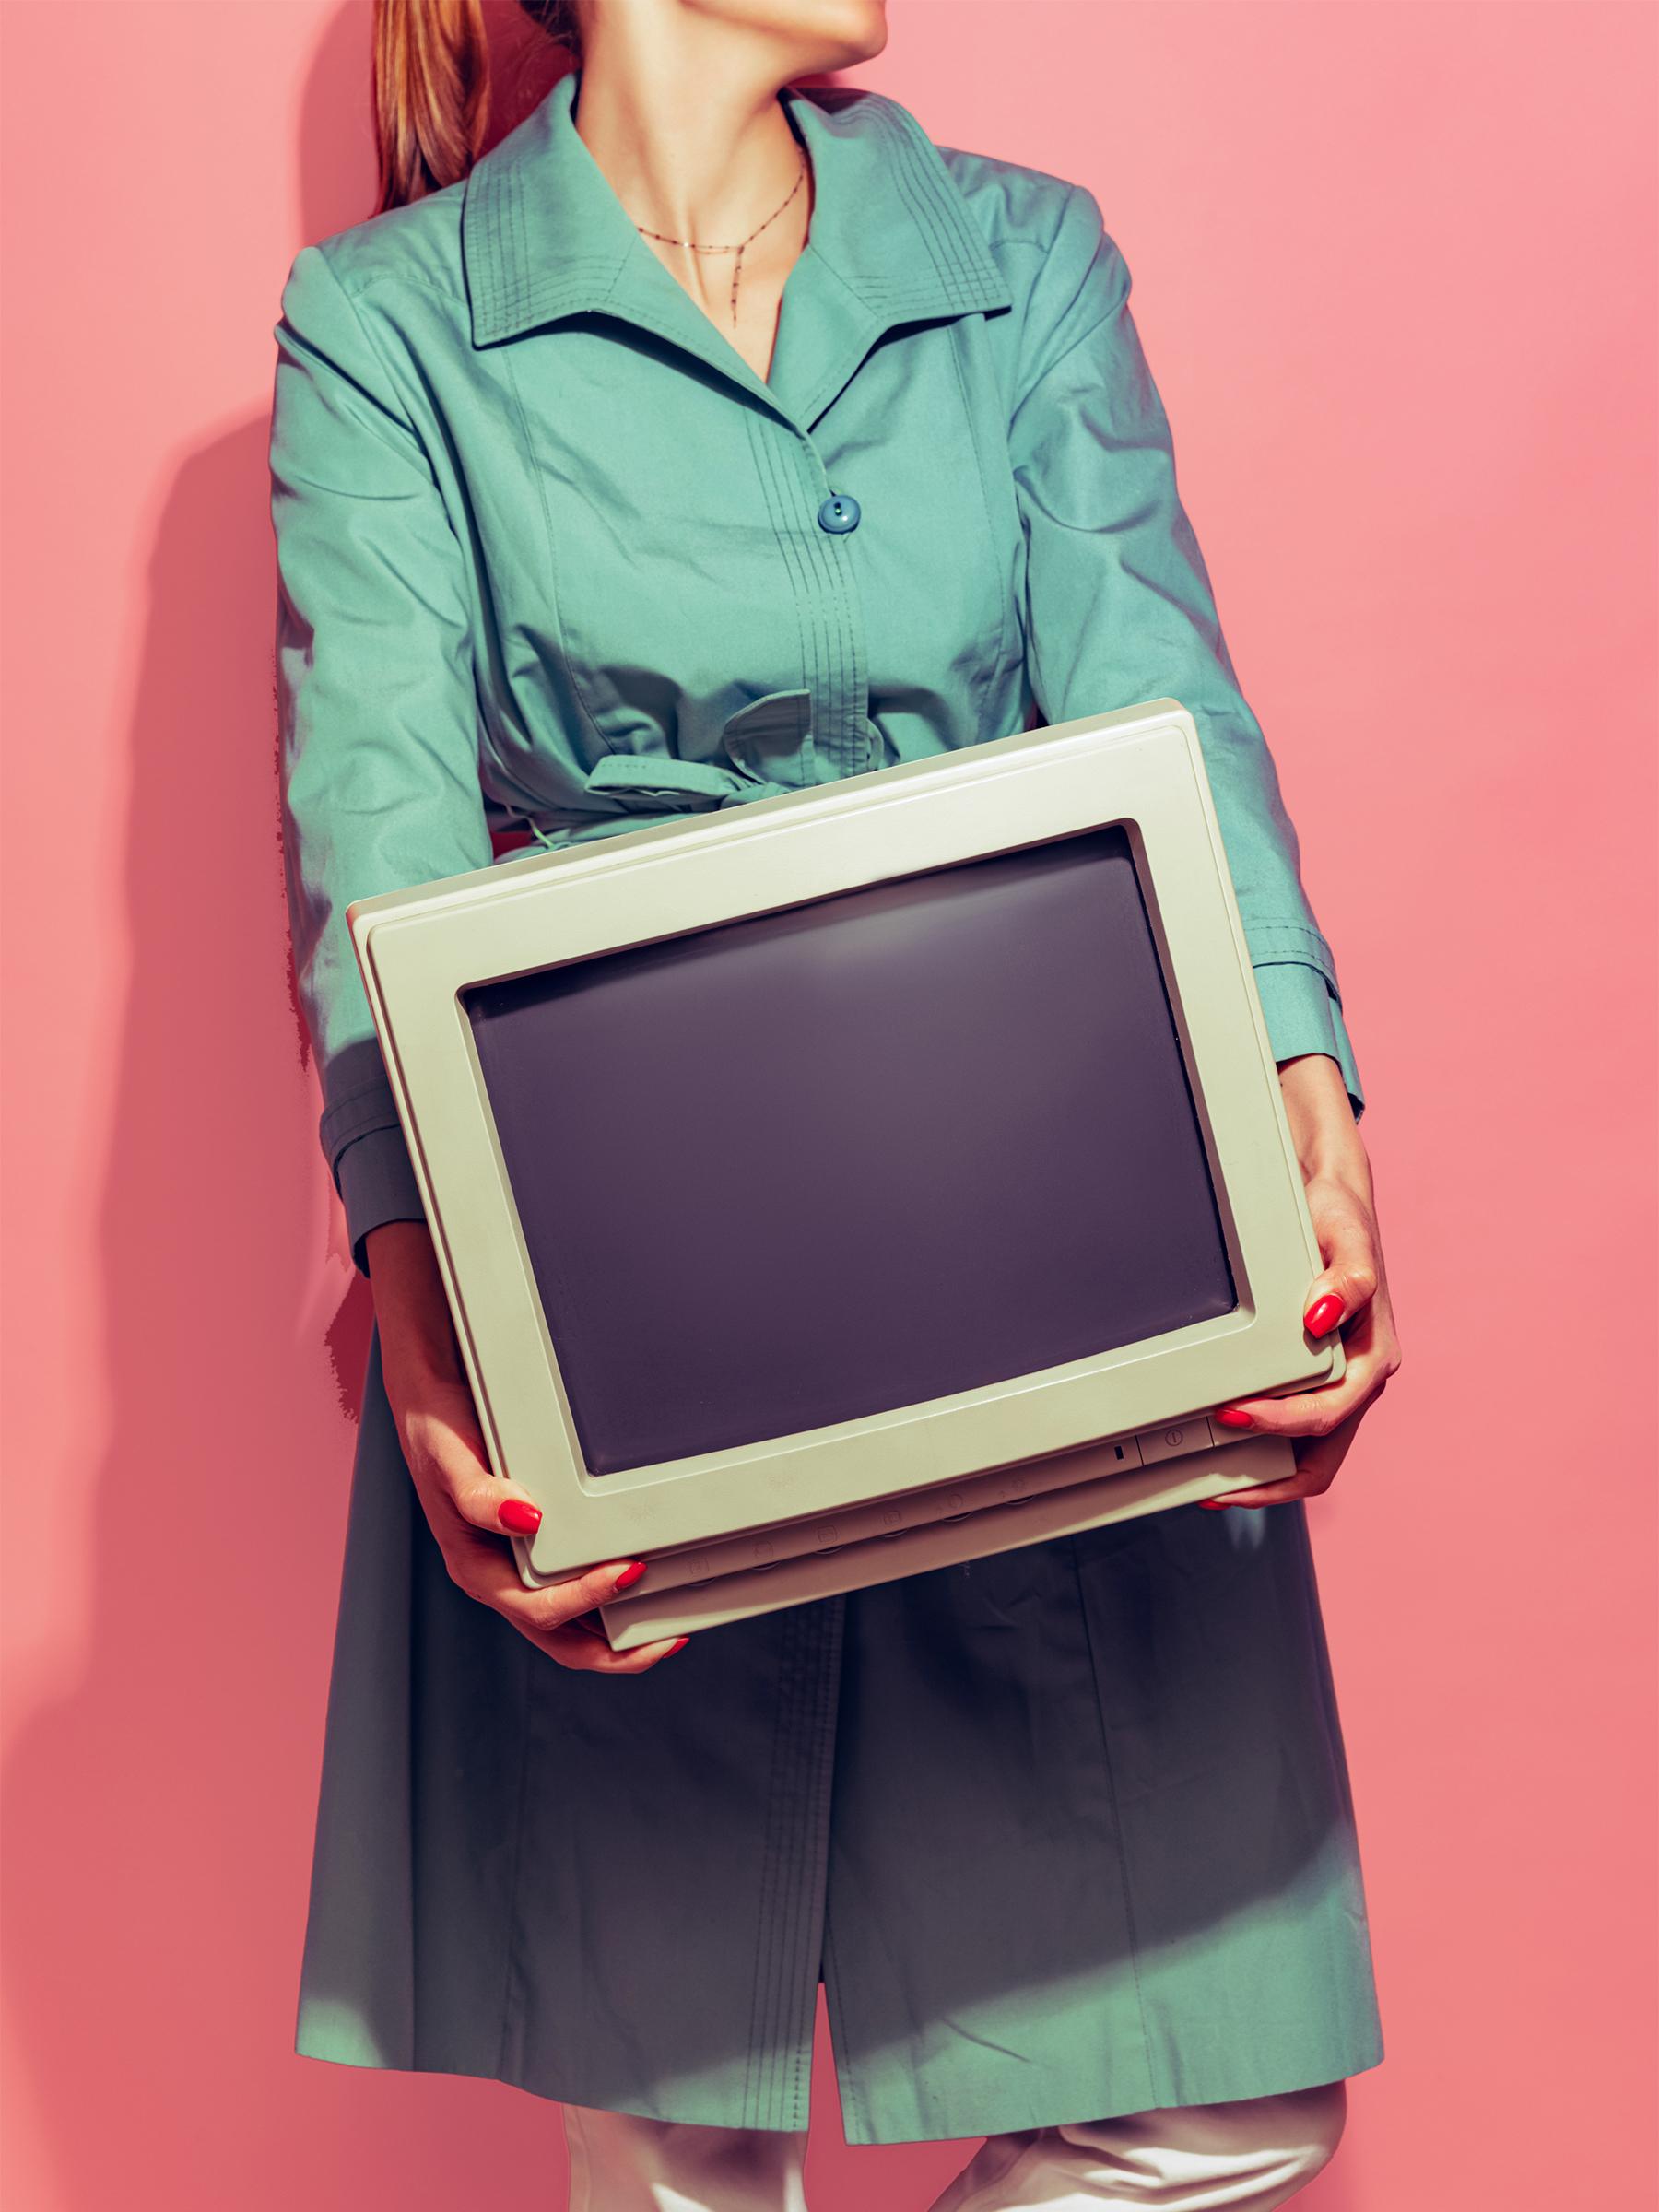 Frau in grünem Trenchcoat trägt alten Computer Hintergrund rot